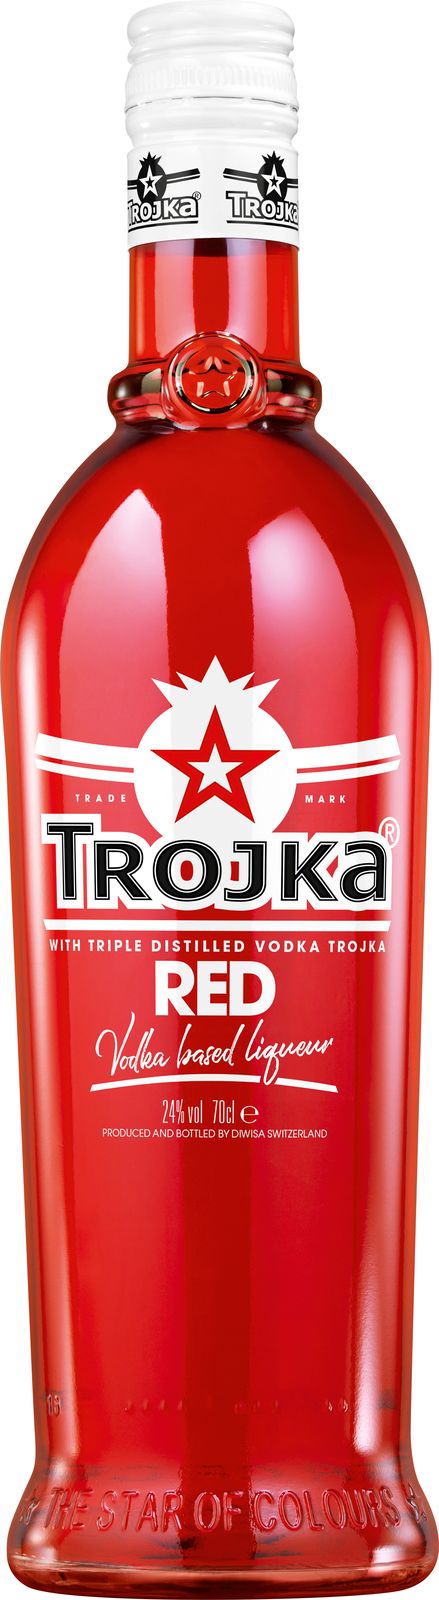 Trojka Red
Vodka